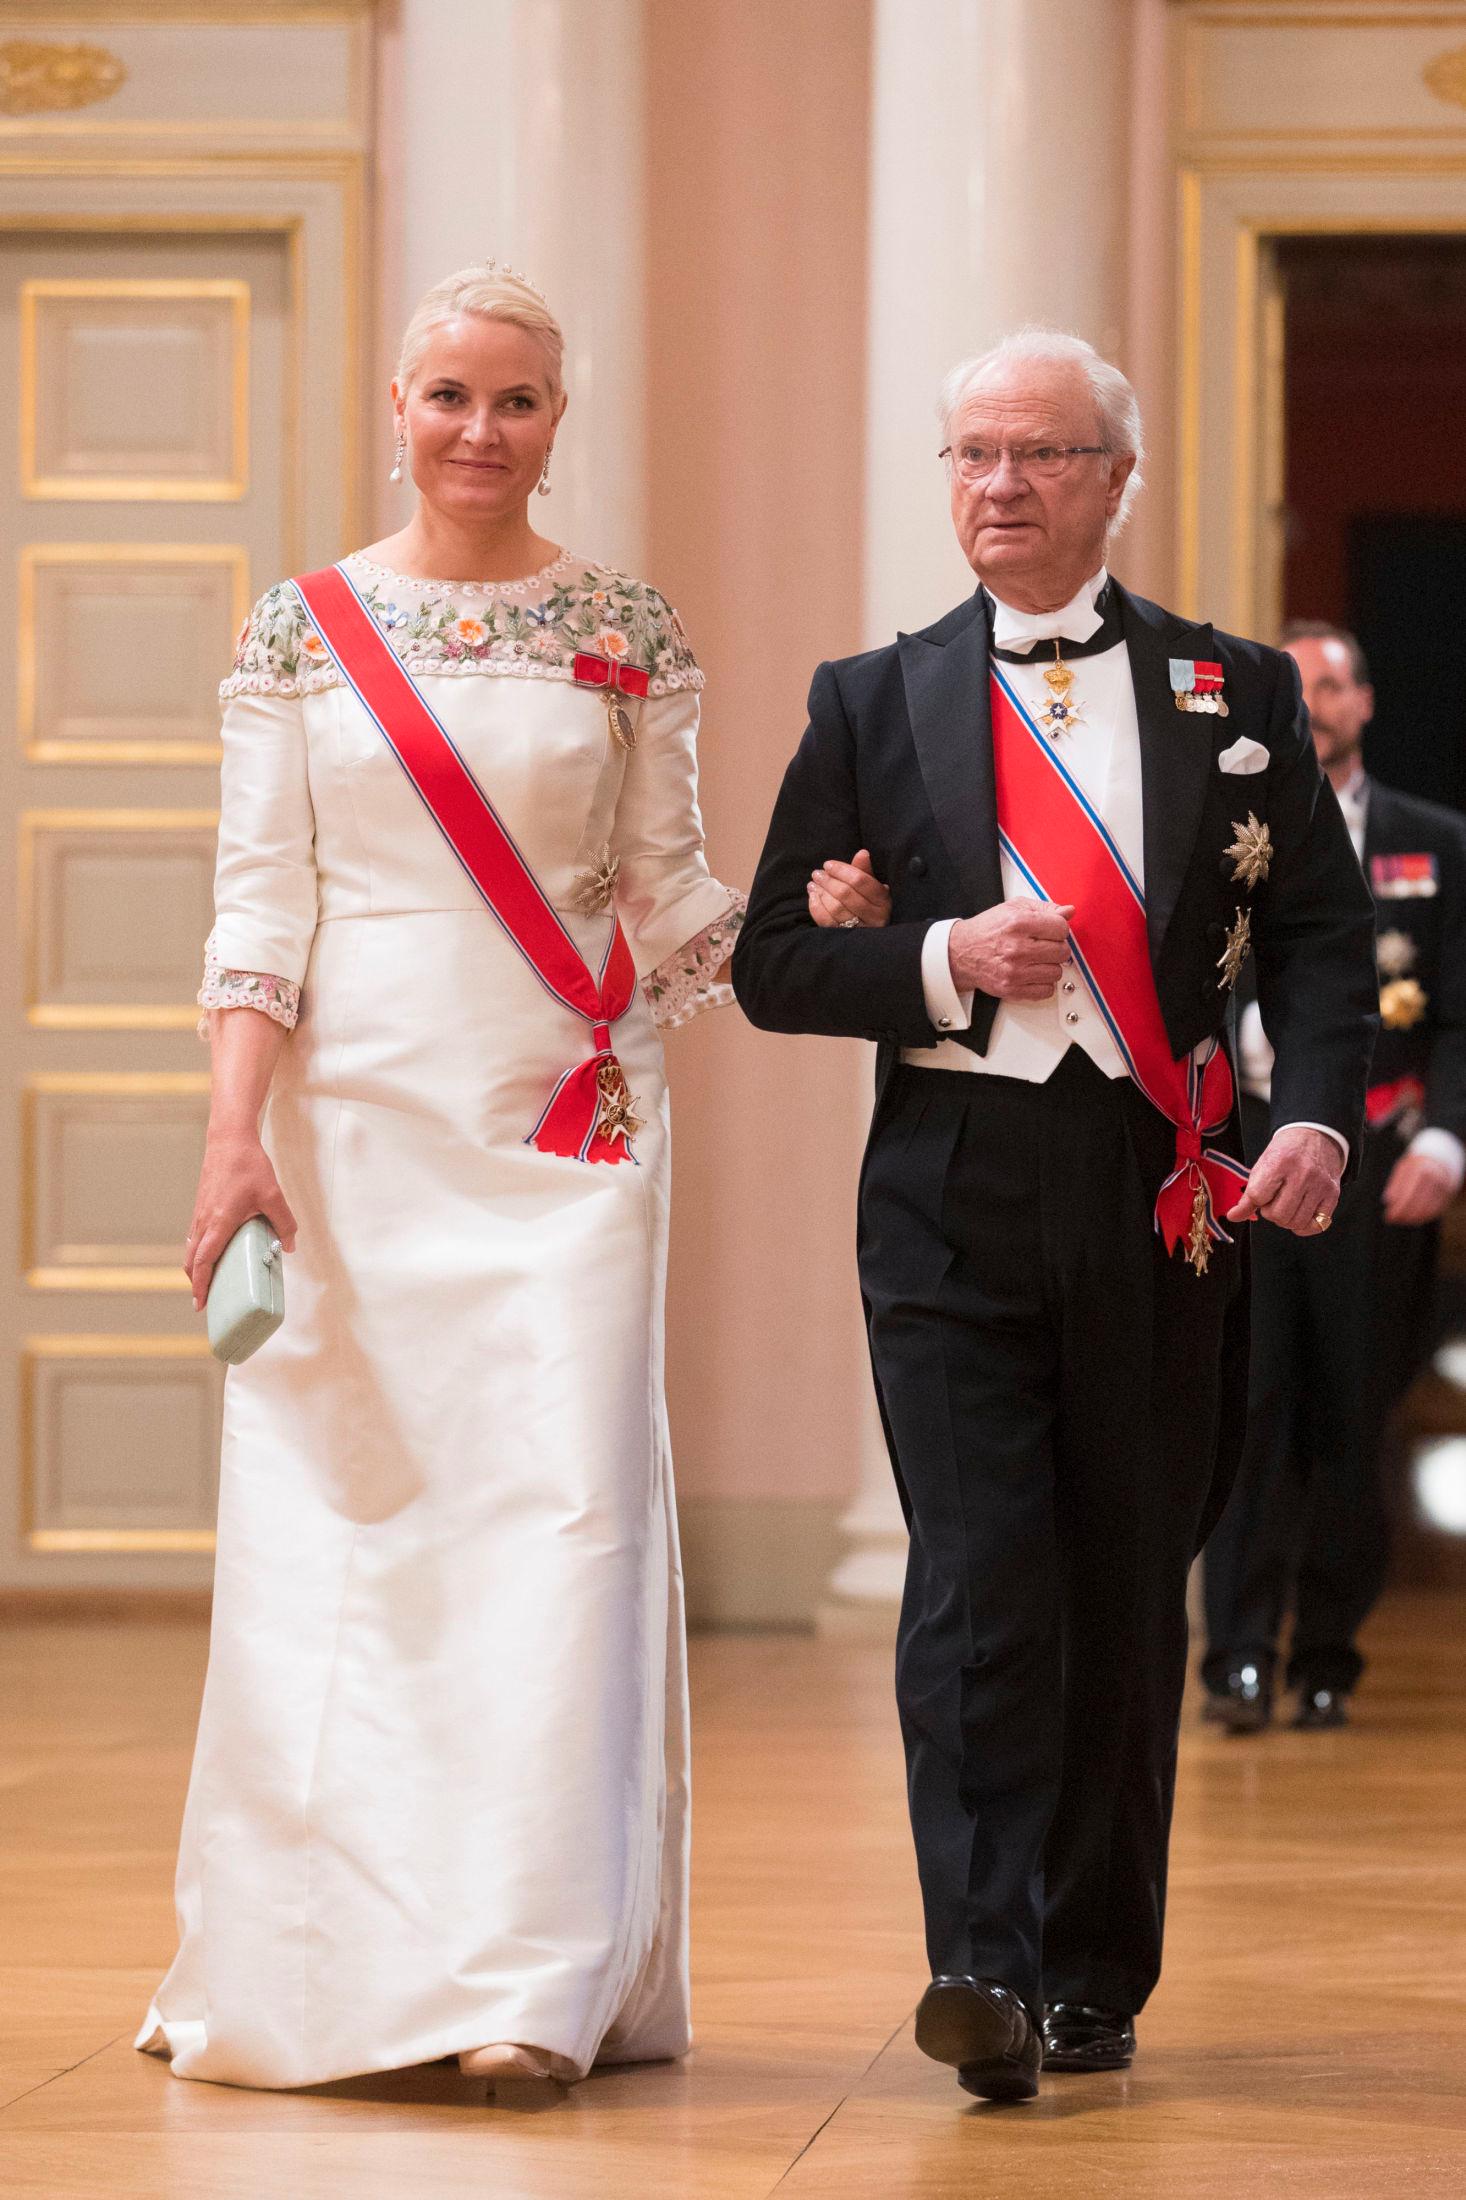 NY KJOLE: Kronprinsesse Mette-Marit i ny kreasjon. Her med Carl Gustaf av Sverige. Foto: Håkon Mosvold Larsen / NTB scanpix